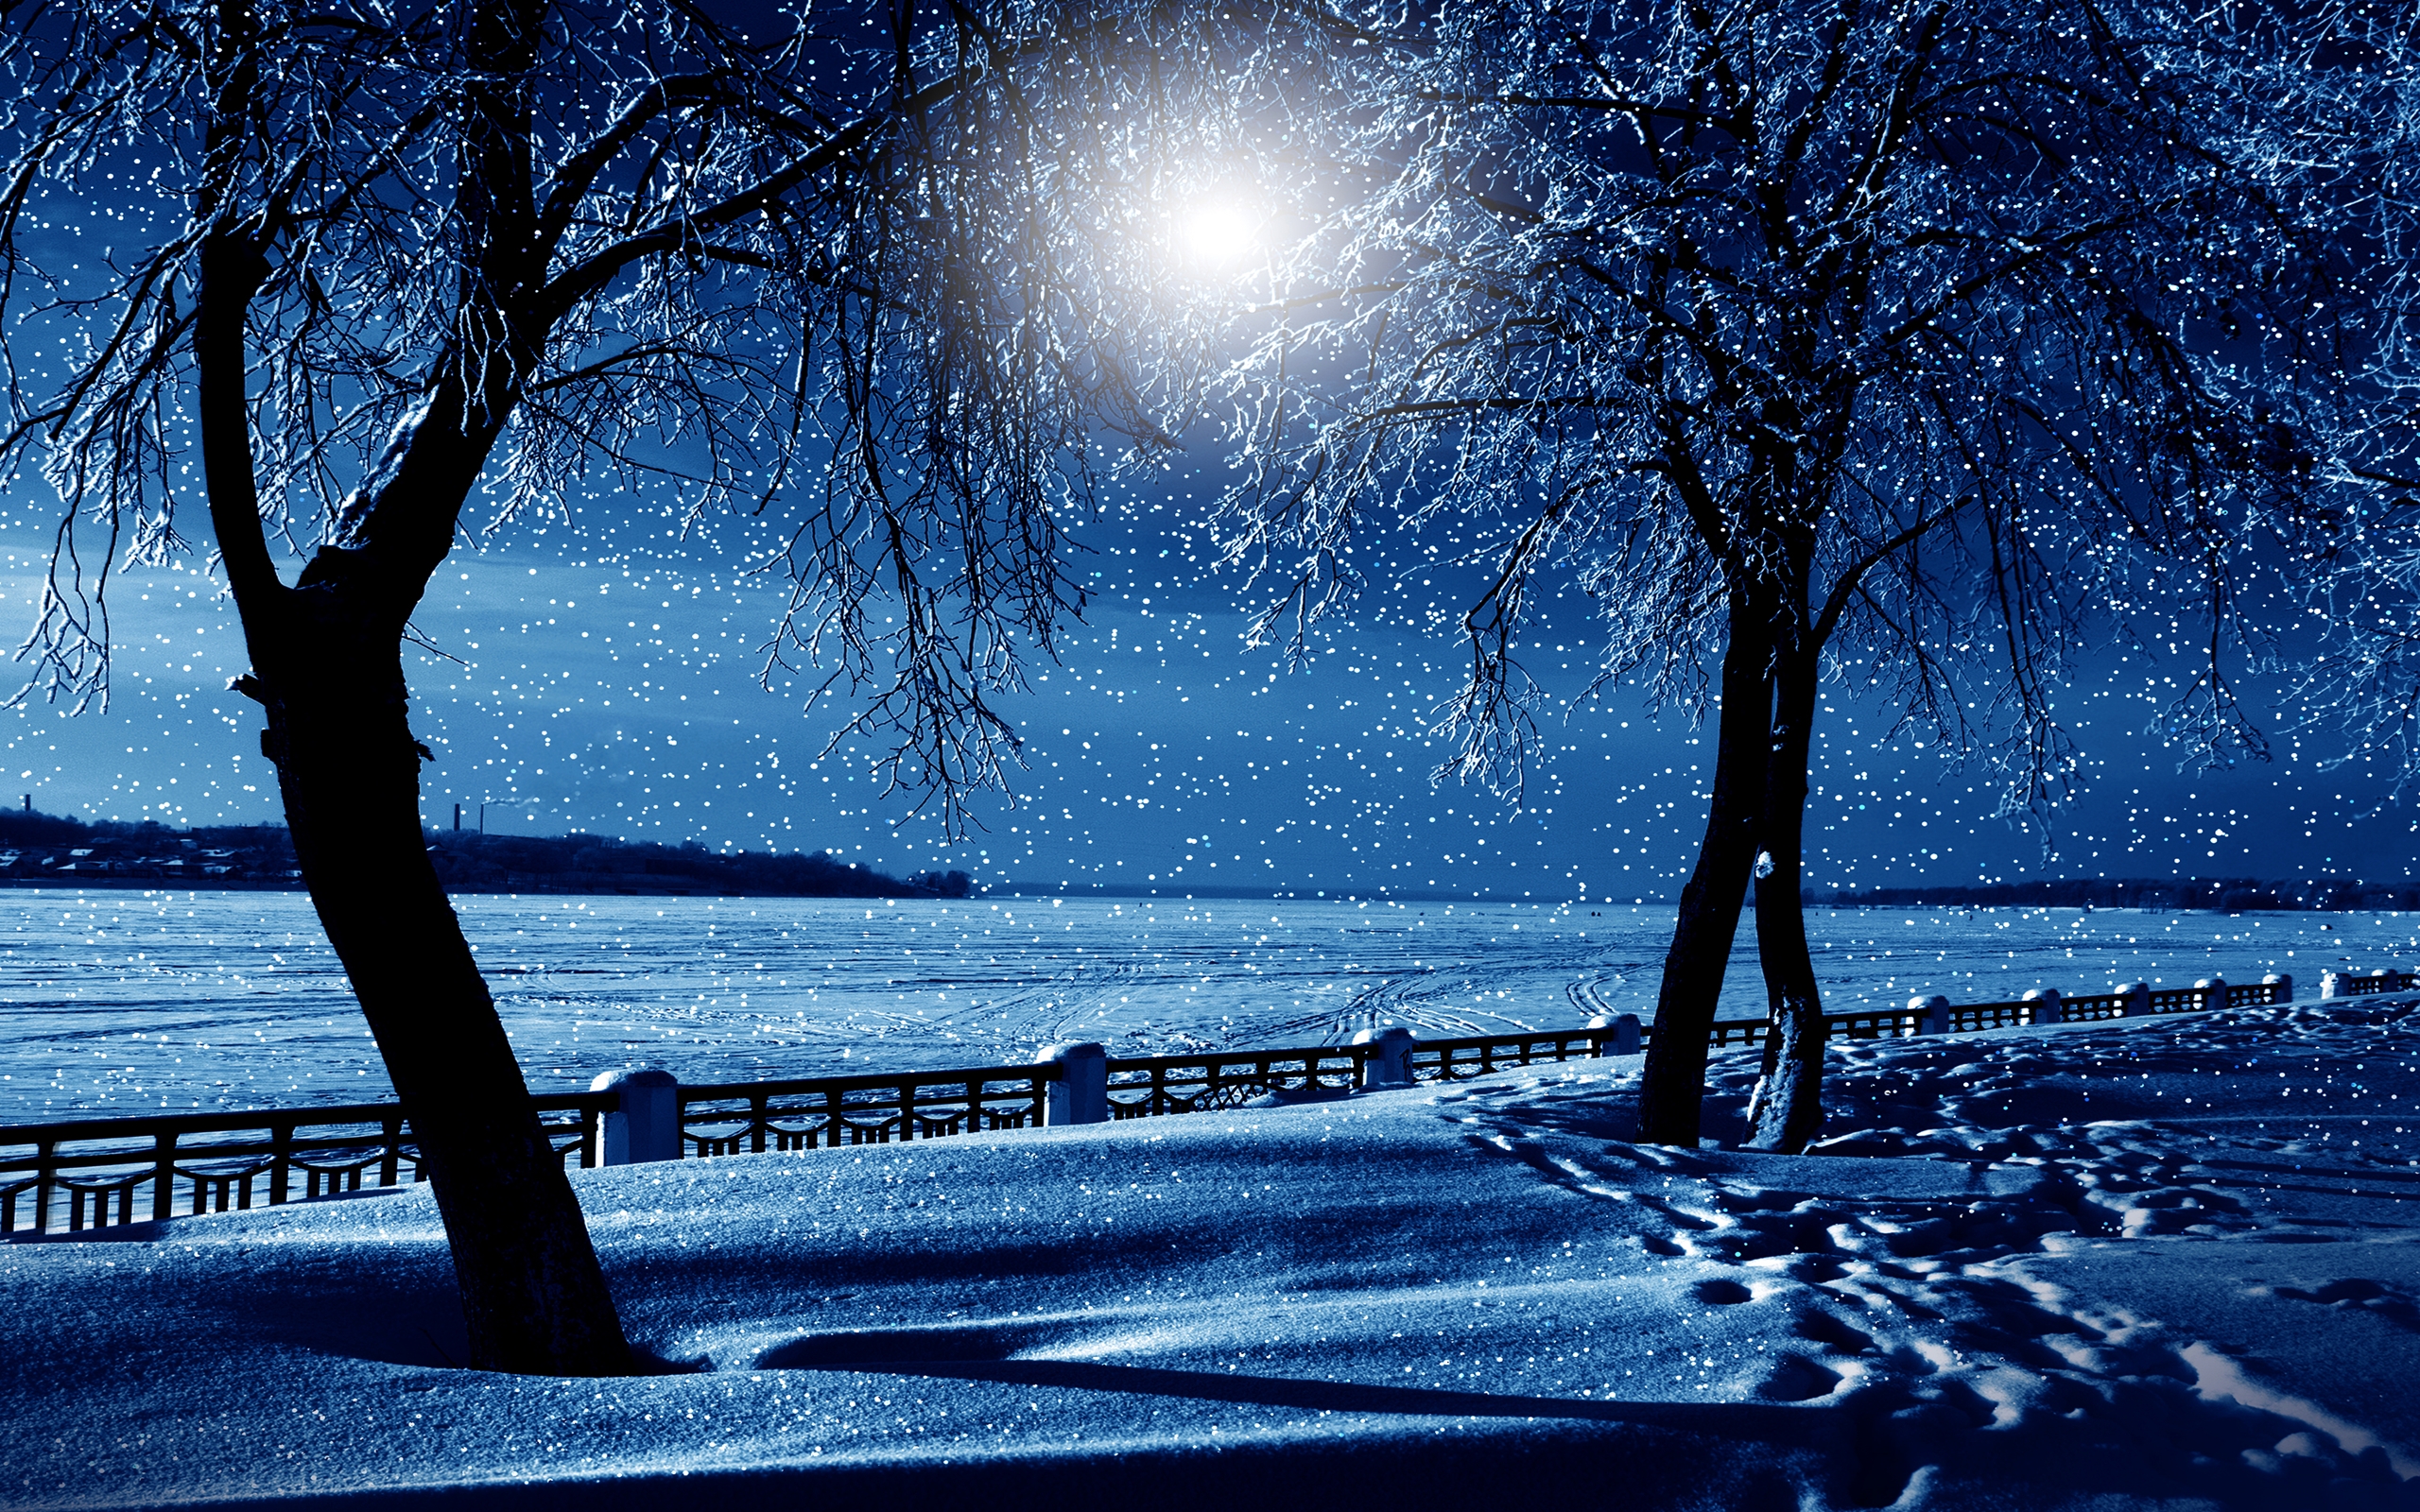 Скачать обои бесплатно Зима, Ночь, Снег, Дерево, Синий, Снегопад, Земля/природа картинка на рабочий стол ПК